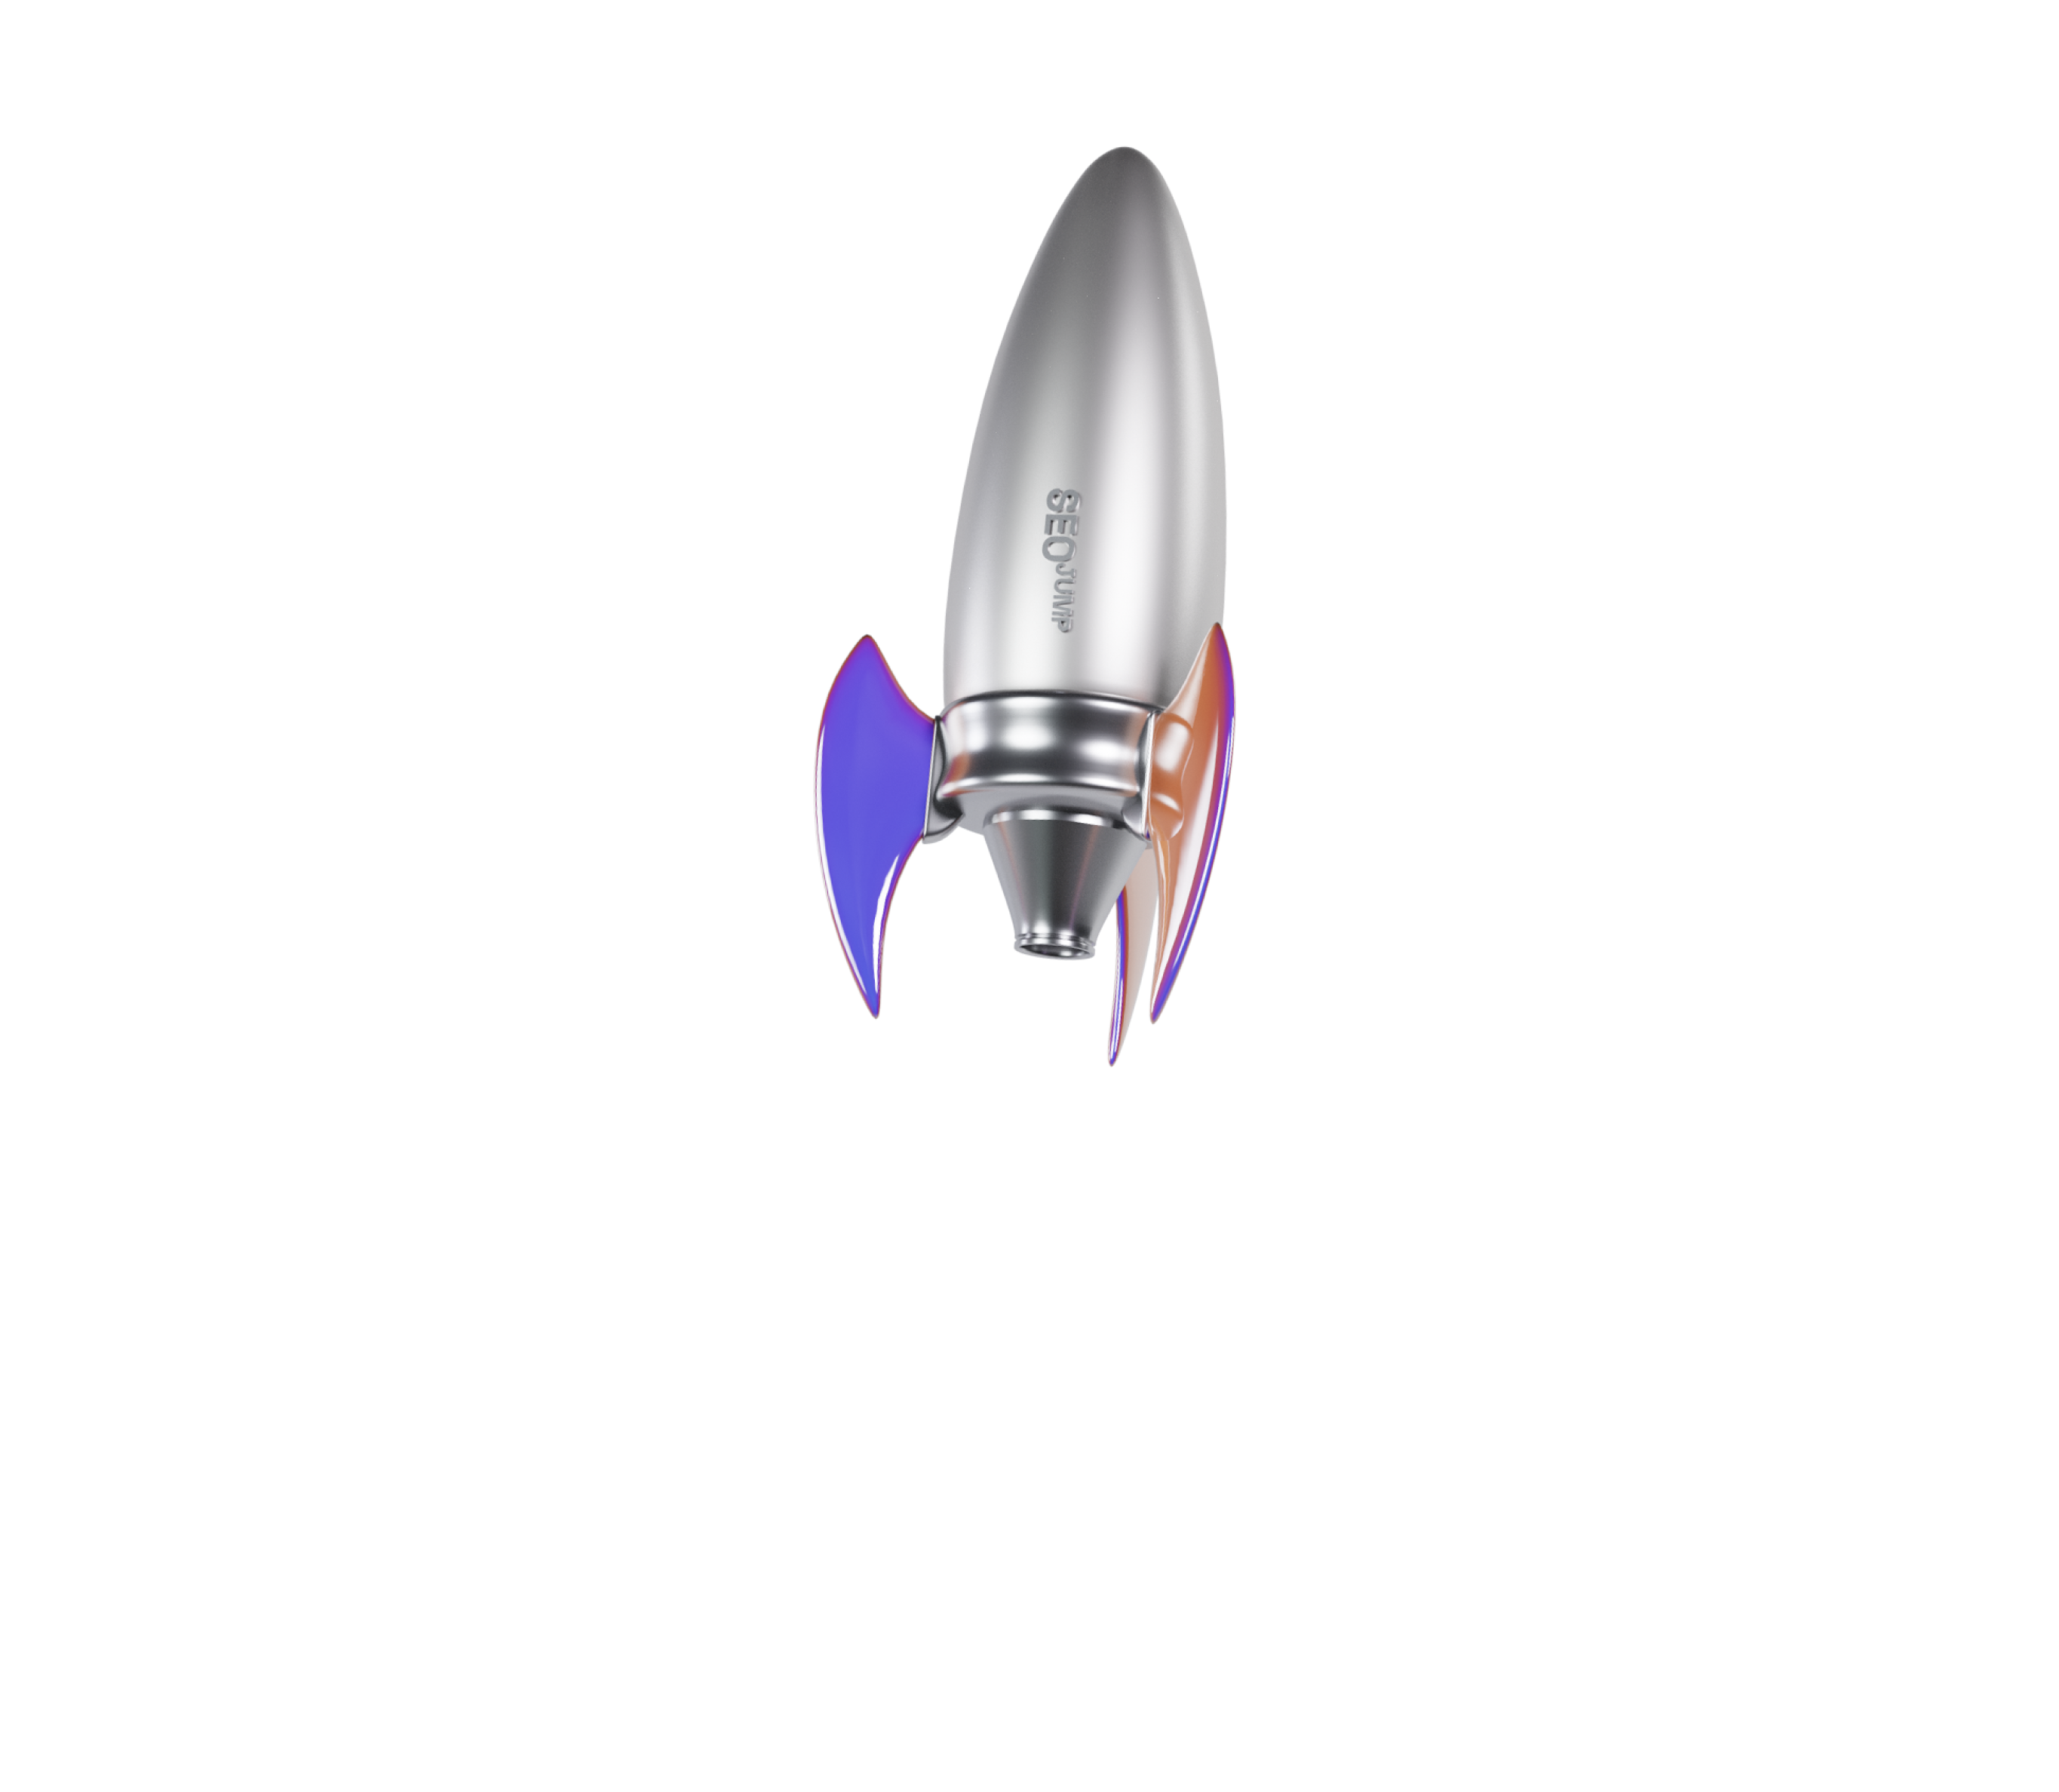 Rocket as 3D objects